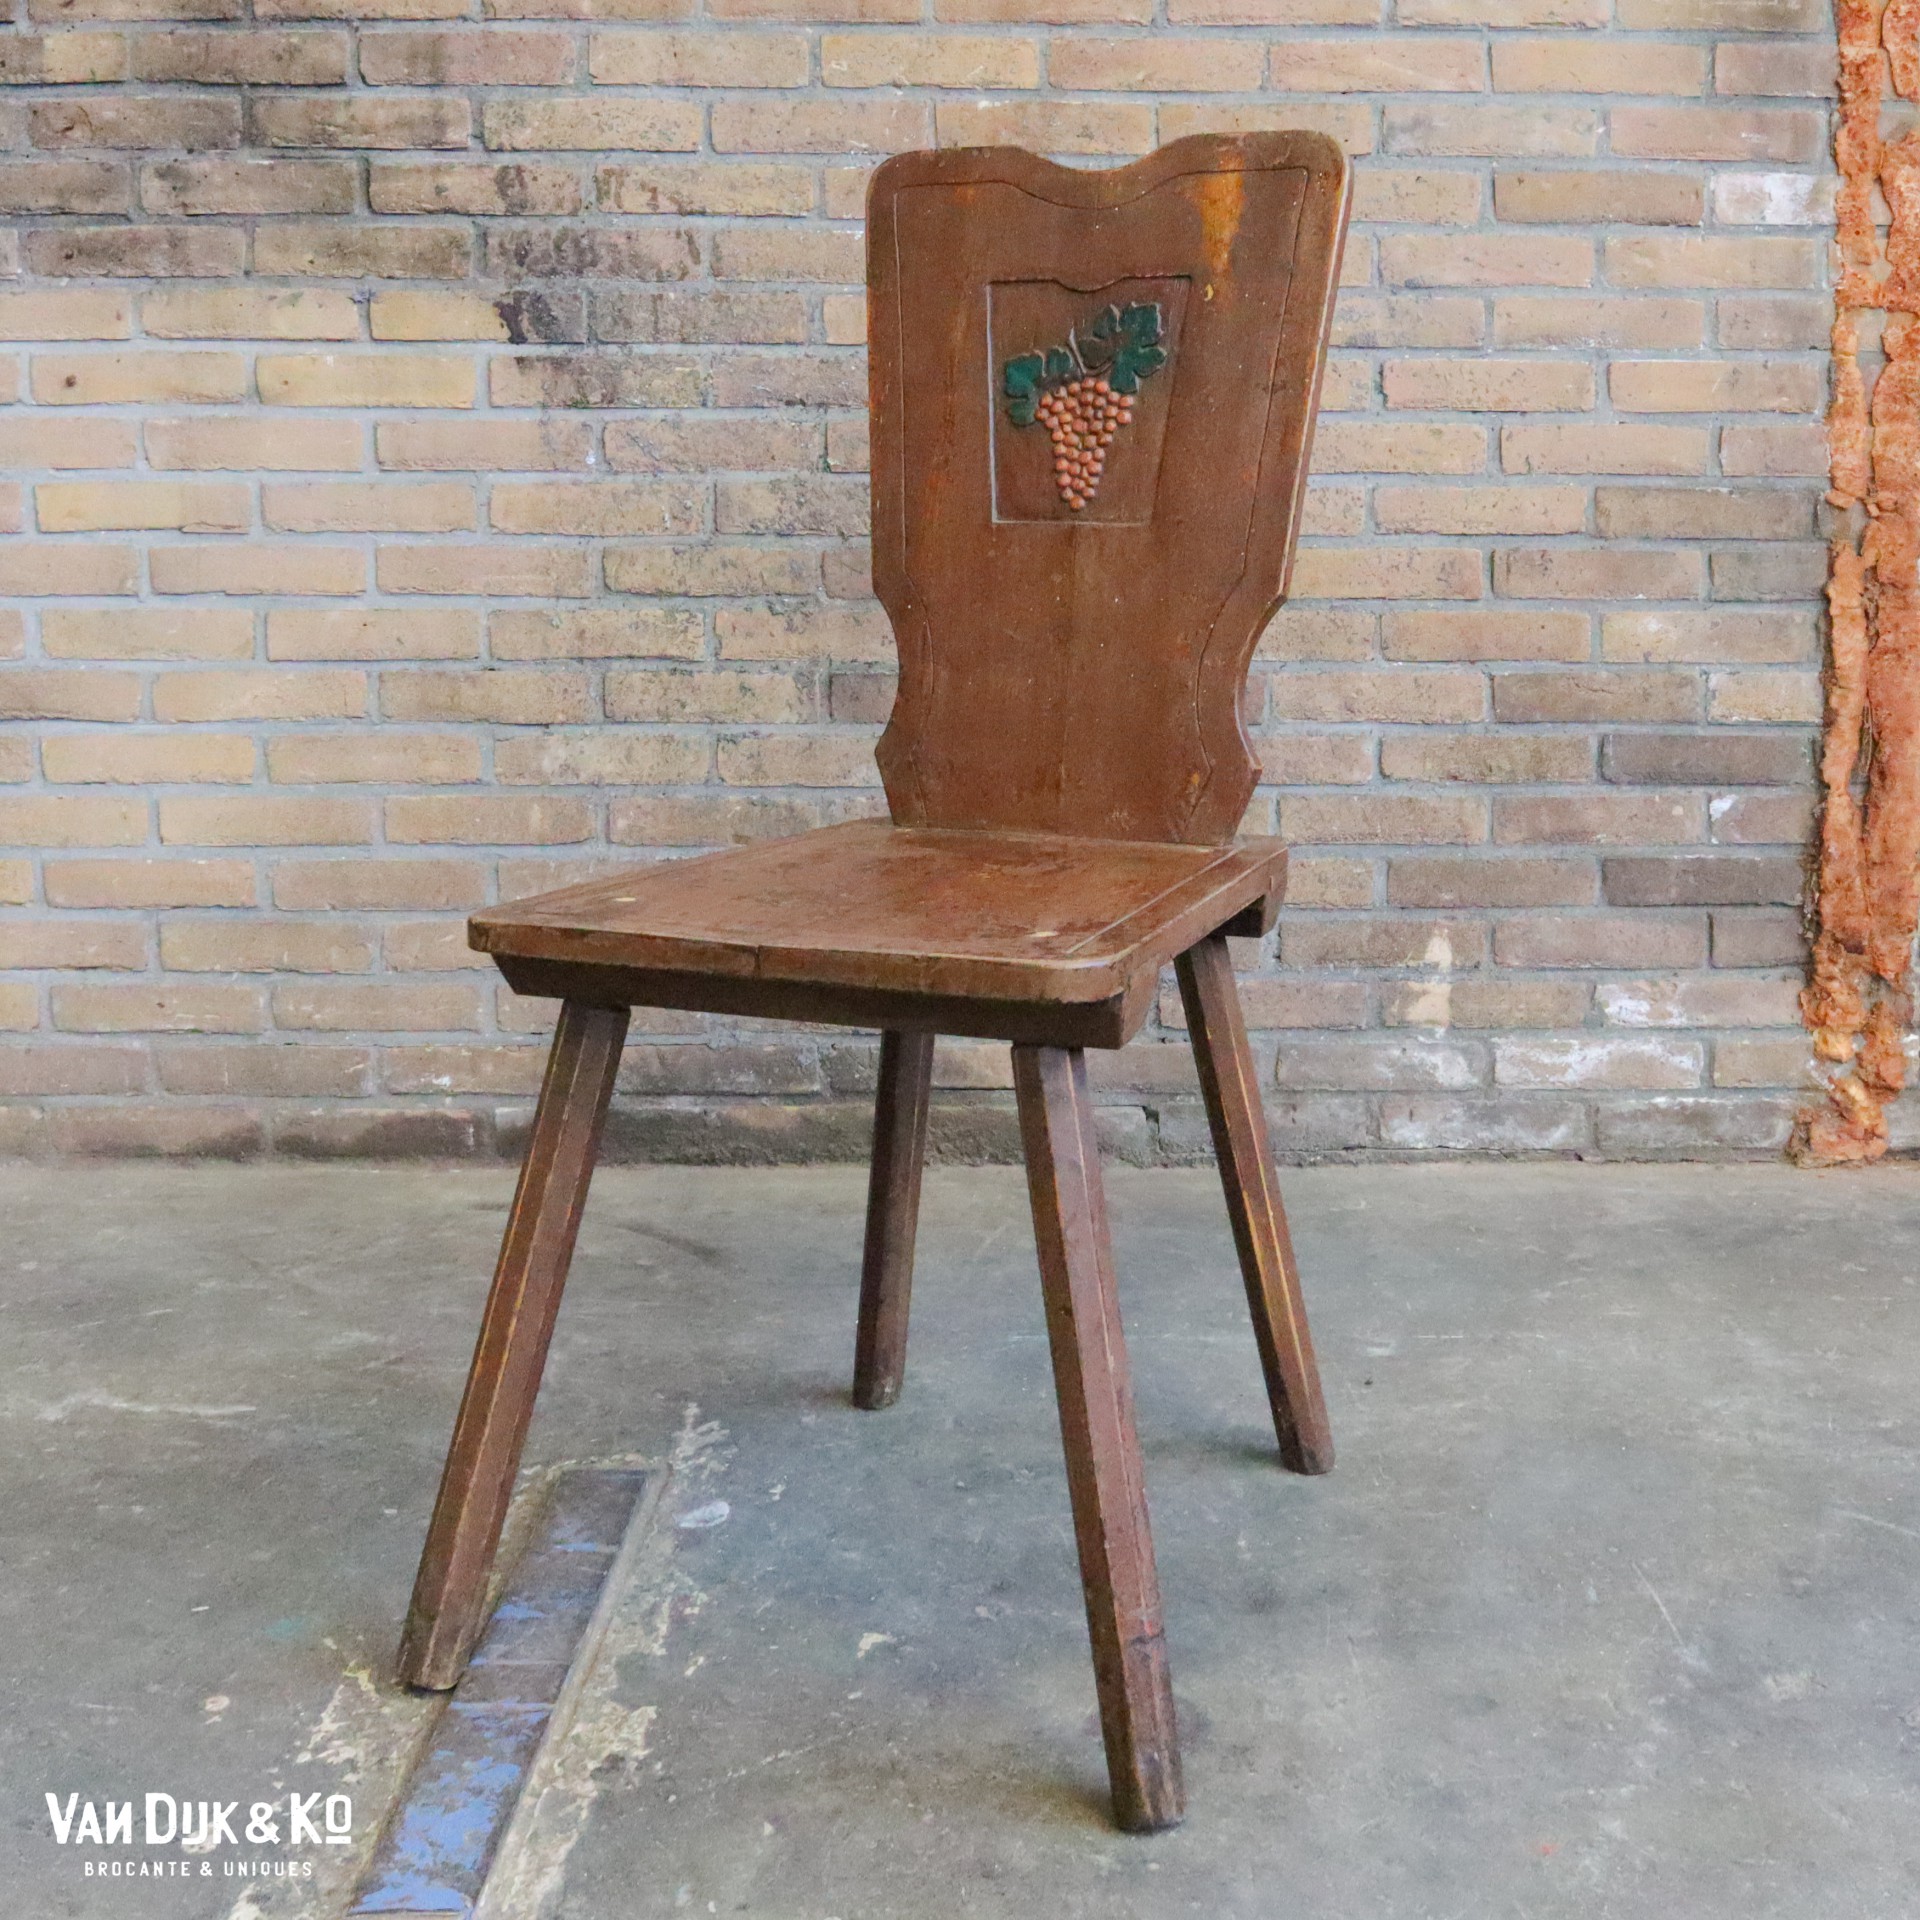 Echt Impressionisme toonhoogte Brocante houten stoel » Van Dijk & Ko